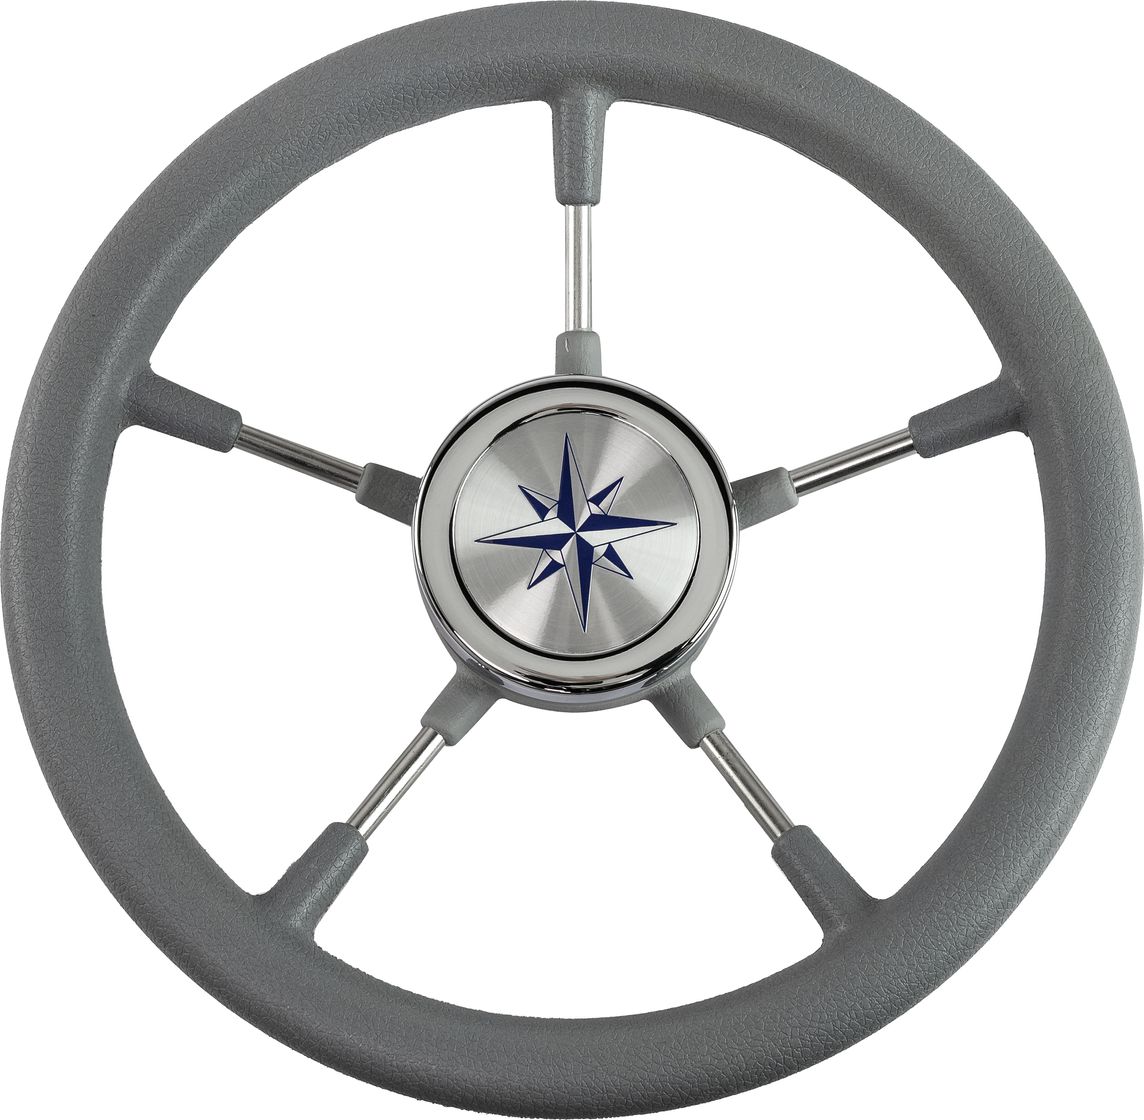 Рулевое колесо RIVA RSL обод серый, спицы серебряные д. 320 мм VN732022-03 рулевое колесо riva rsl обод серый спицы серебряные д 360 мм vn735022 03